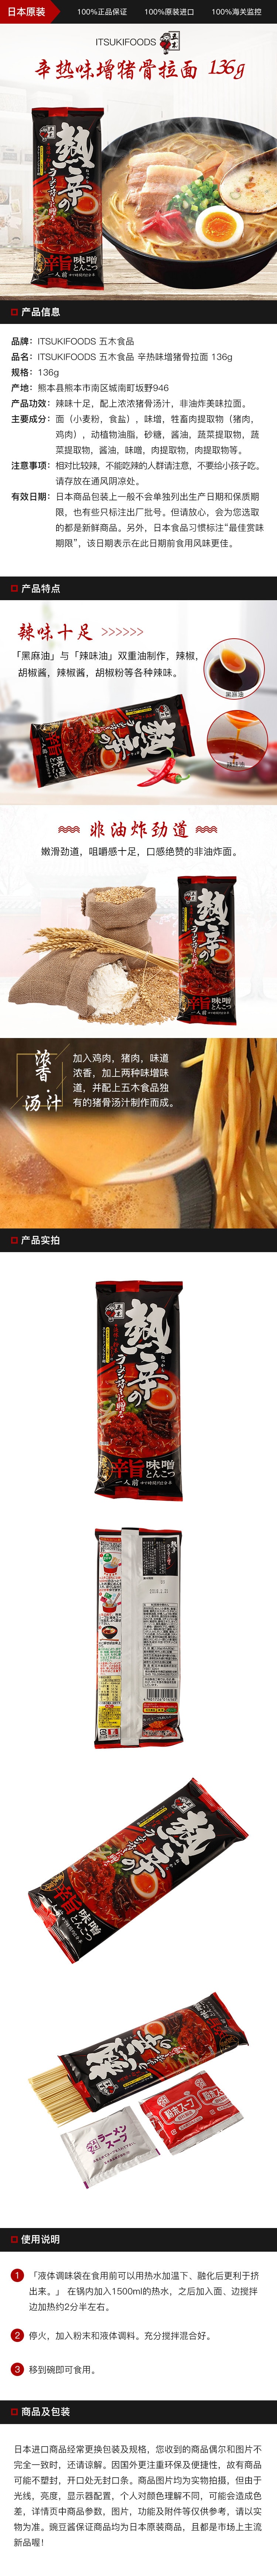 [日本直邮] ITSUKI FOODS 五木食品 辛热味增猪骨拉面 136g